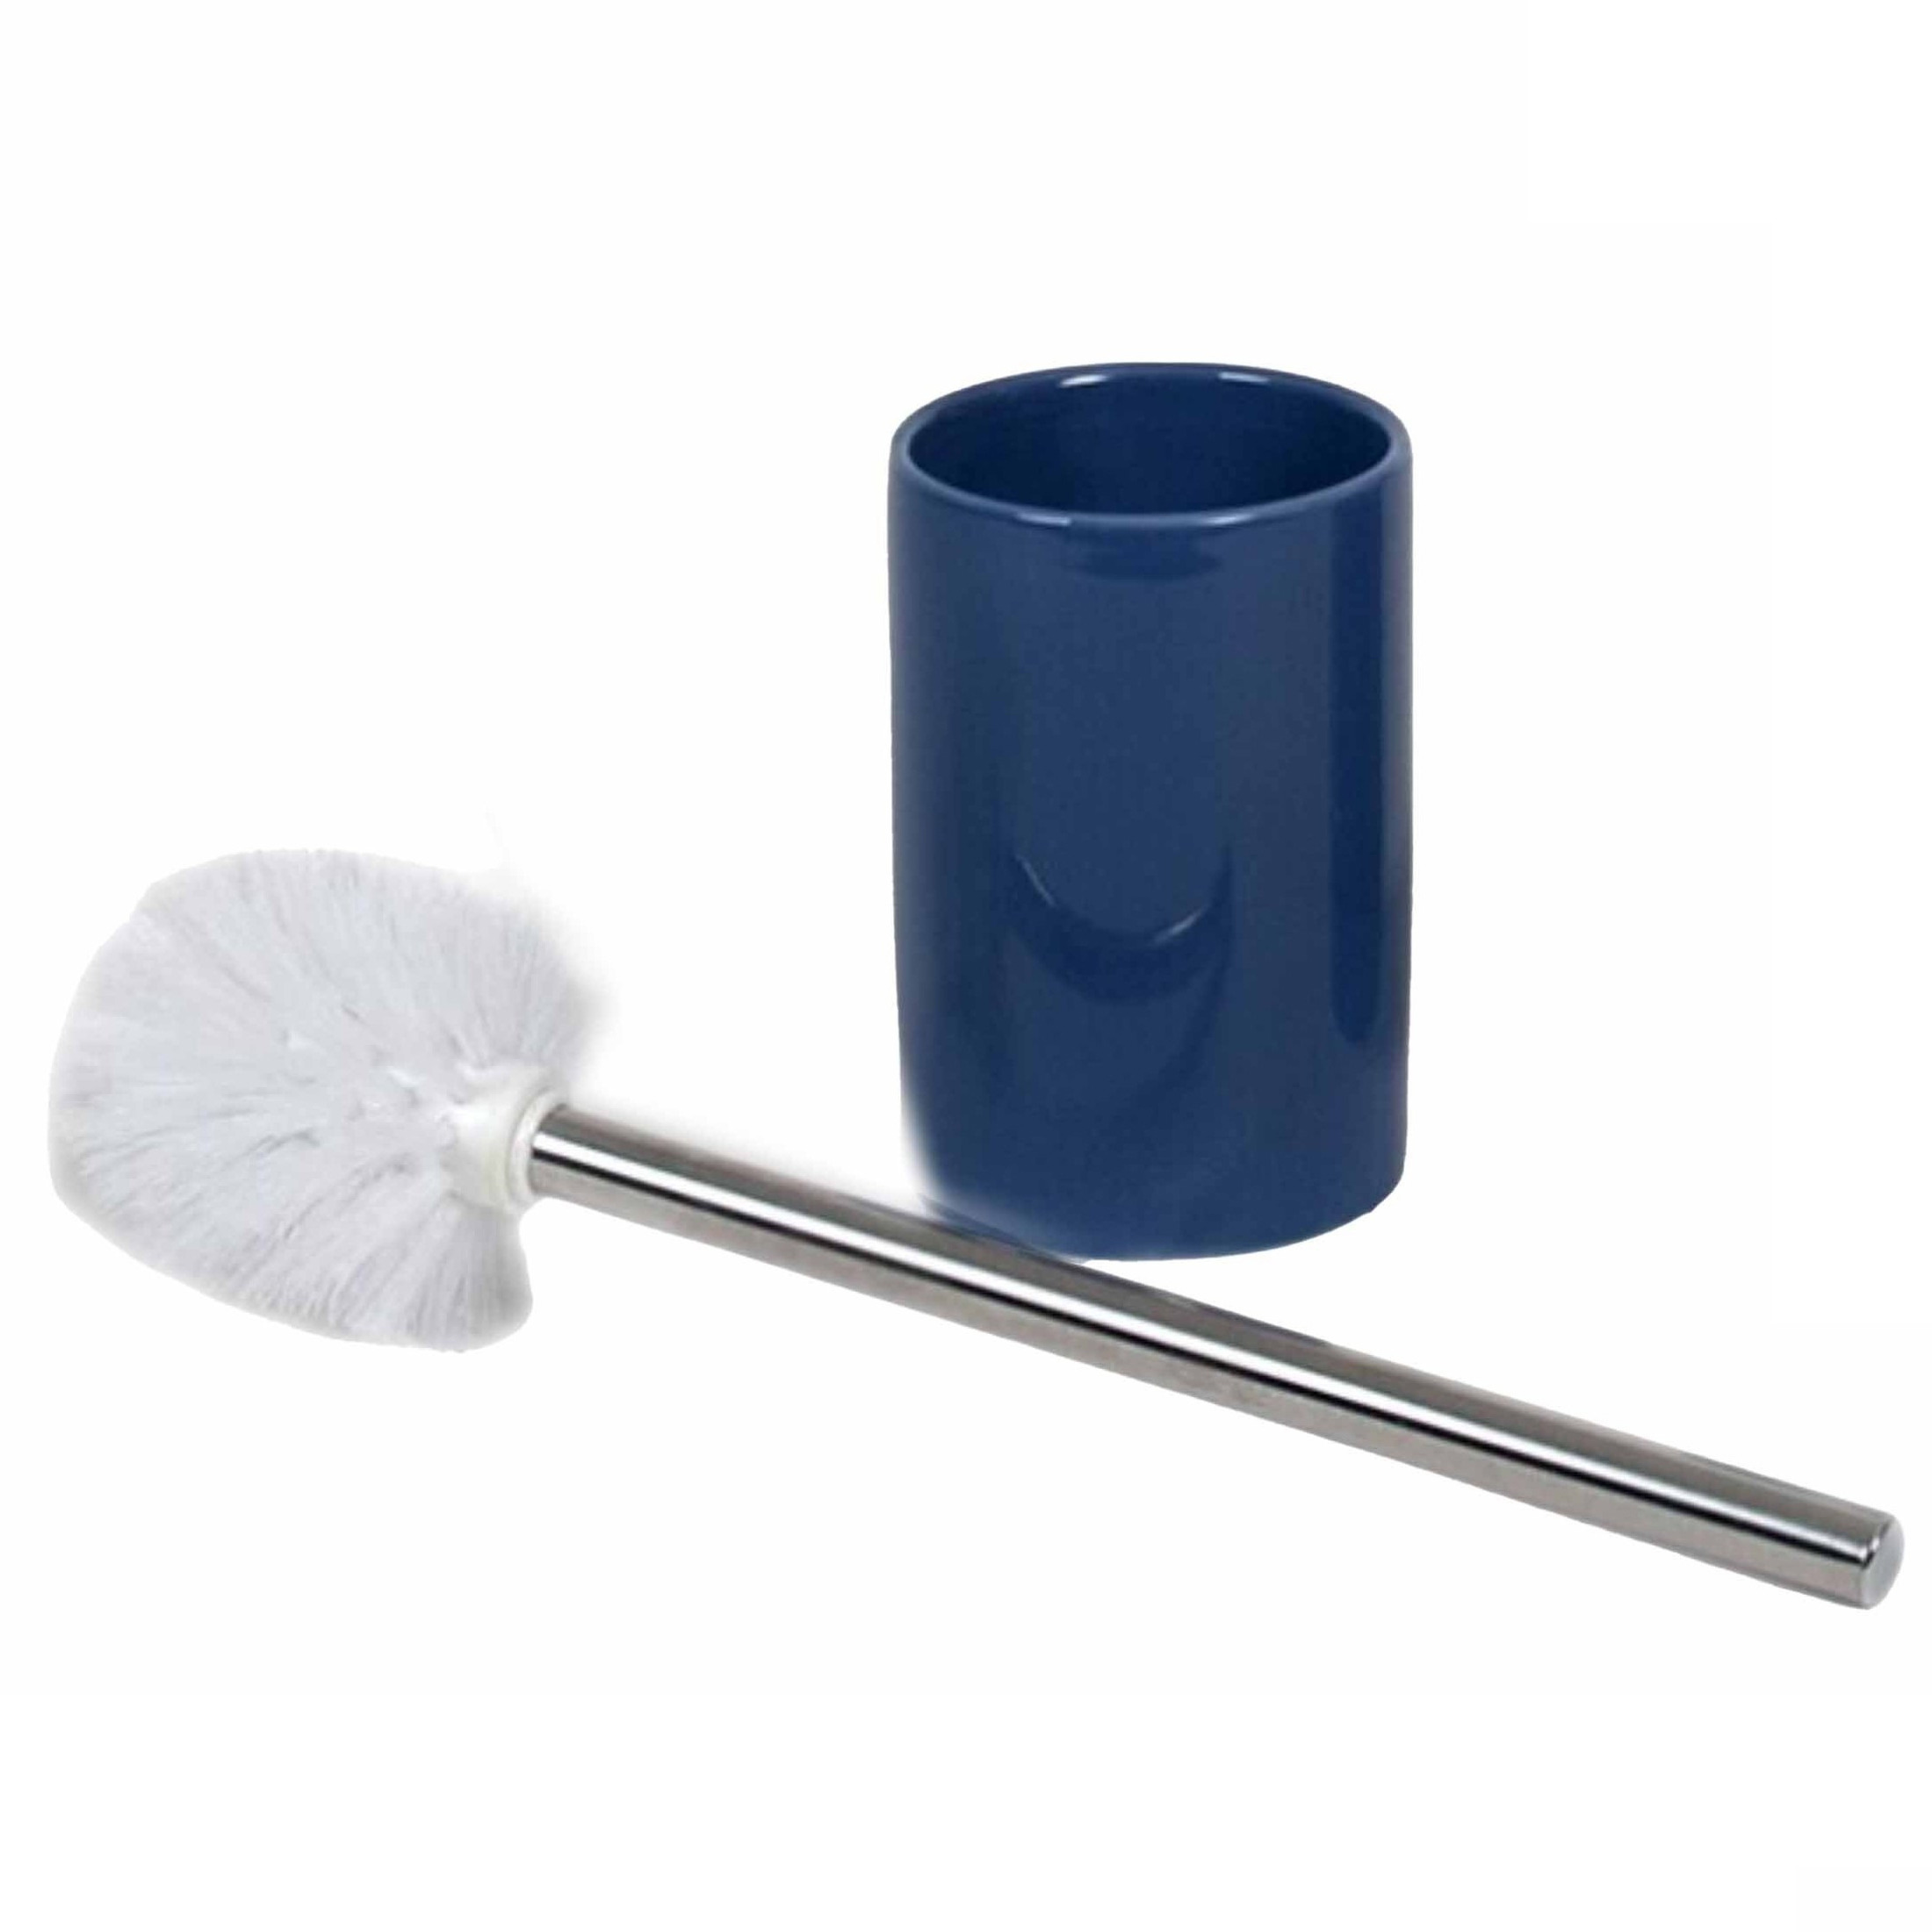 Wc-toiletborstel inclusief houder blauw-zilver 37 cm van RVS-keramiek